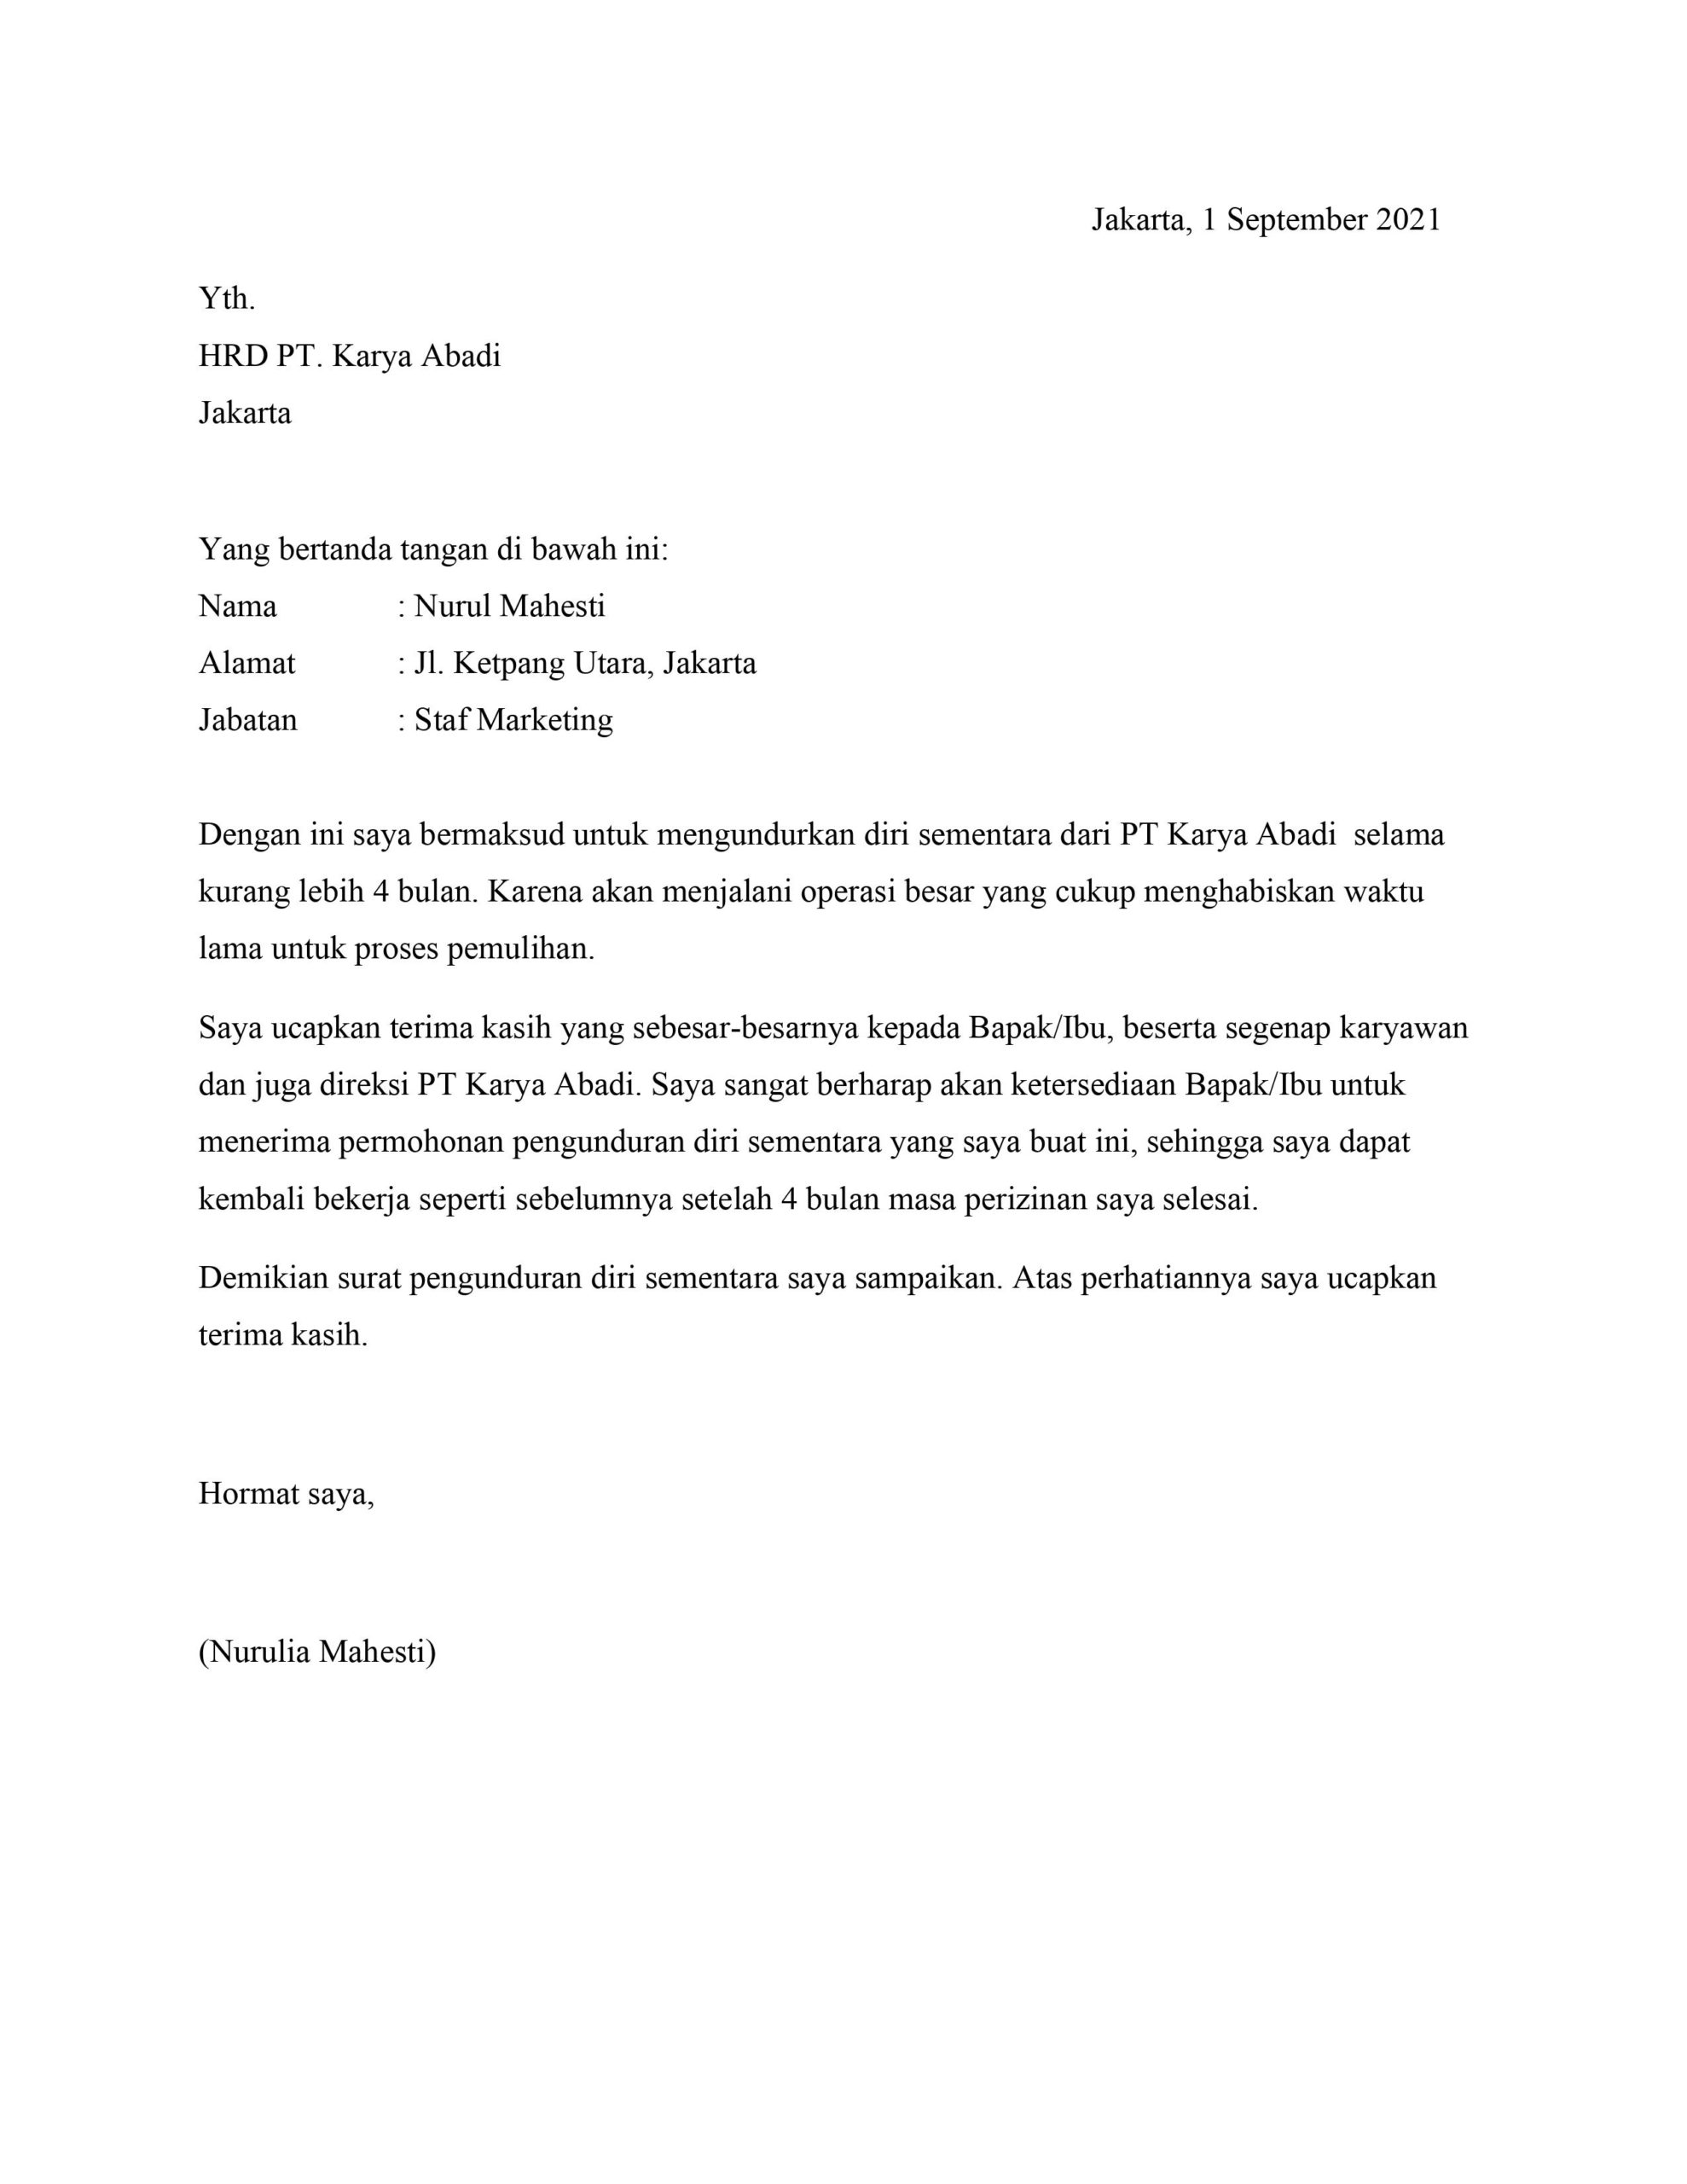 Detail Contoh Surat Keterangan Resign Dari Perusahaan Nomer 11